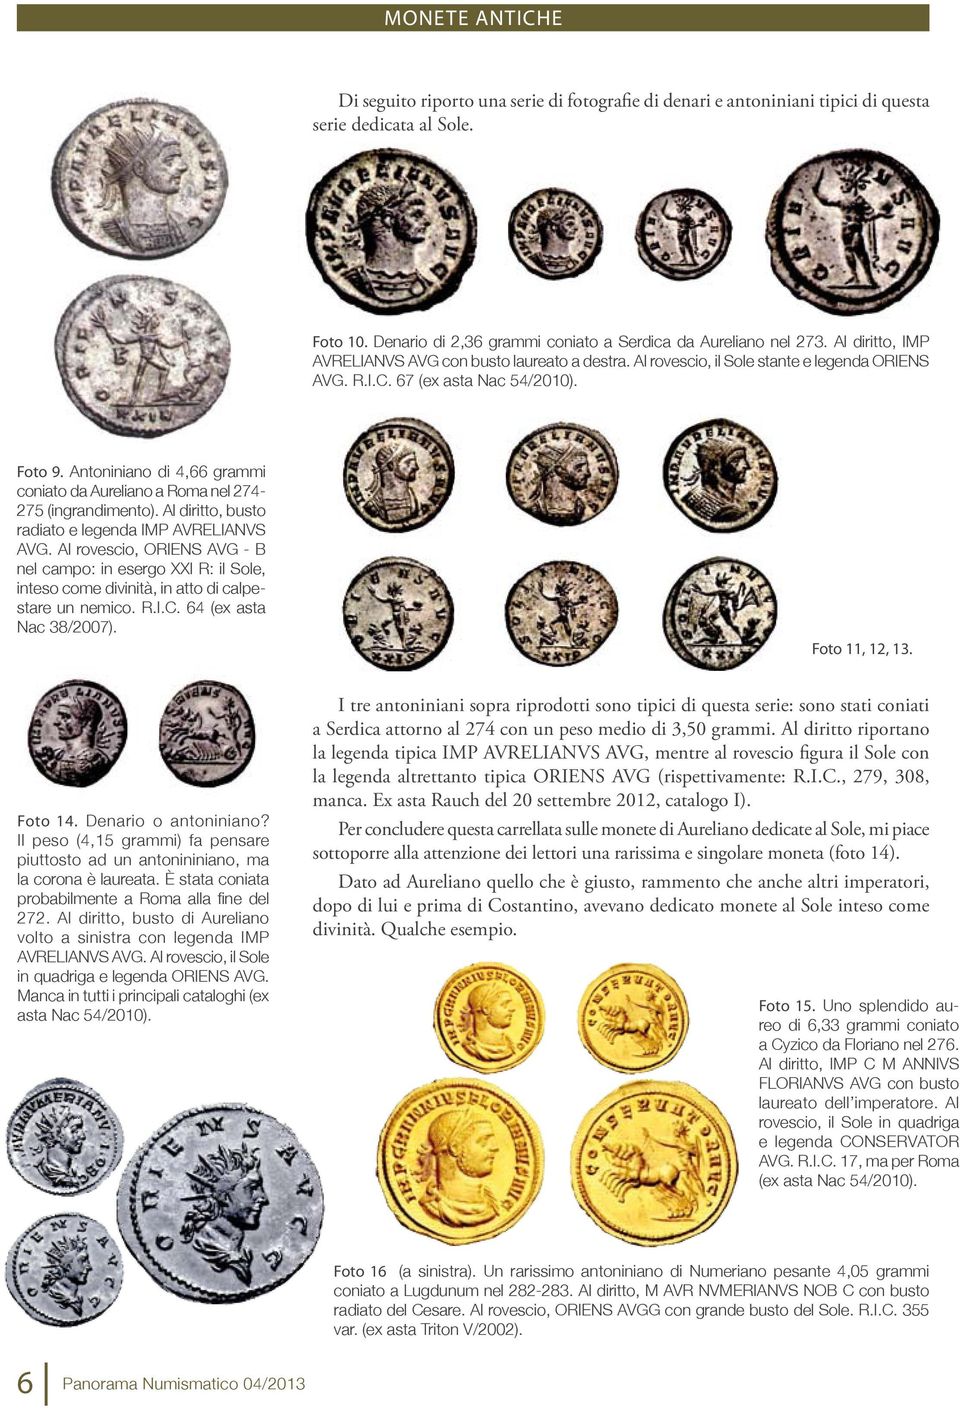 Antoniniano di 4,66 grammi coniato da Aureliano a Roma nel 274-275 (ingrandimento). Al diritto, busto radiato e legenda IMP AVRELIANVS AVG.